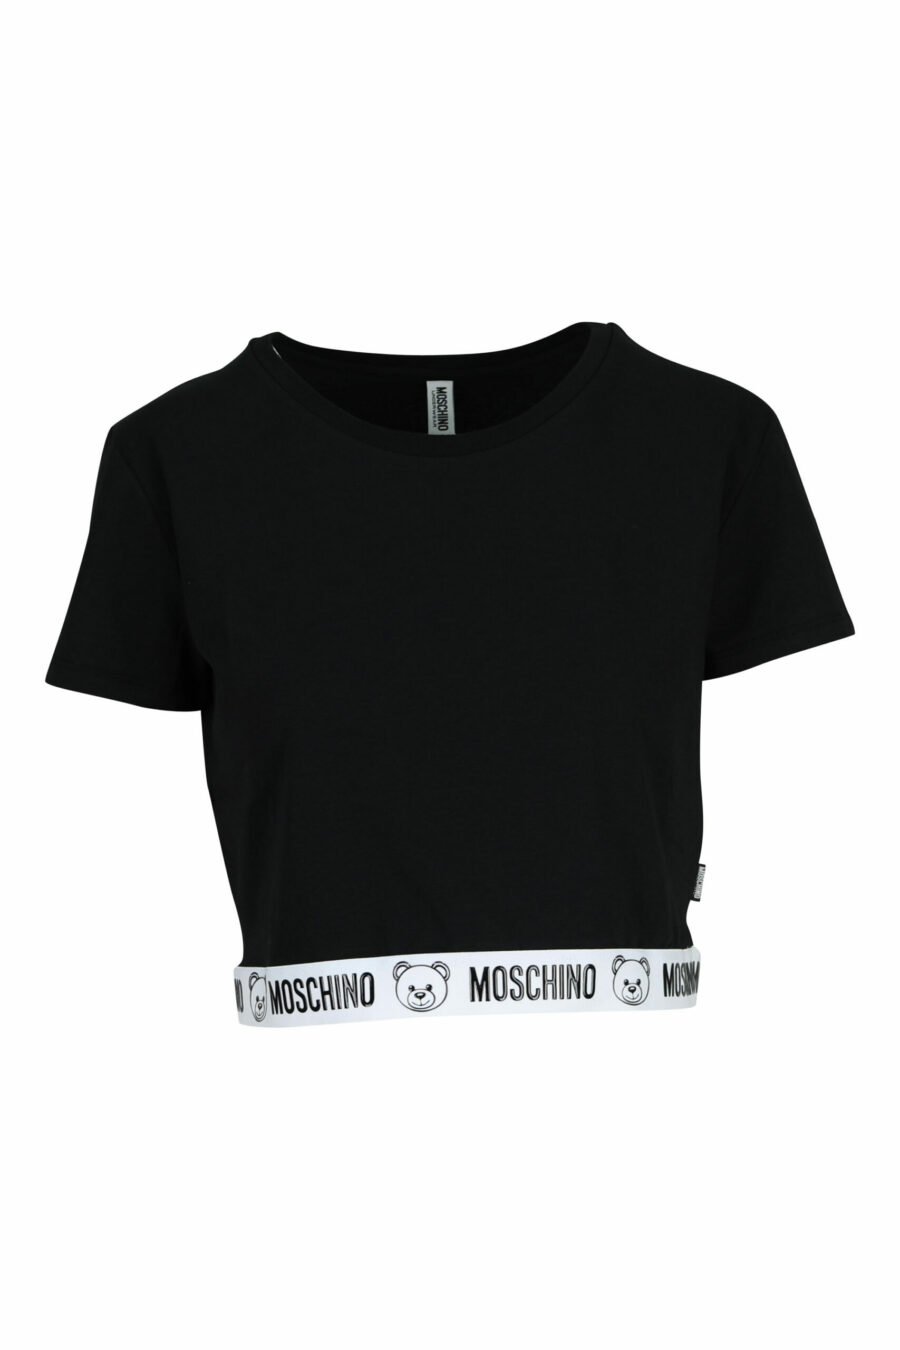 Kurzes schwarzes T-Shirt mit Bärenlogo auf weißem Band - 667113355283 skaliert